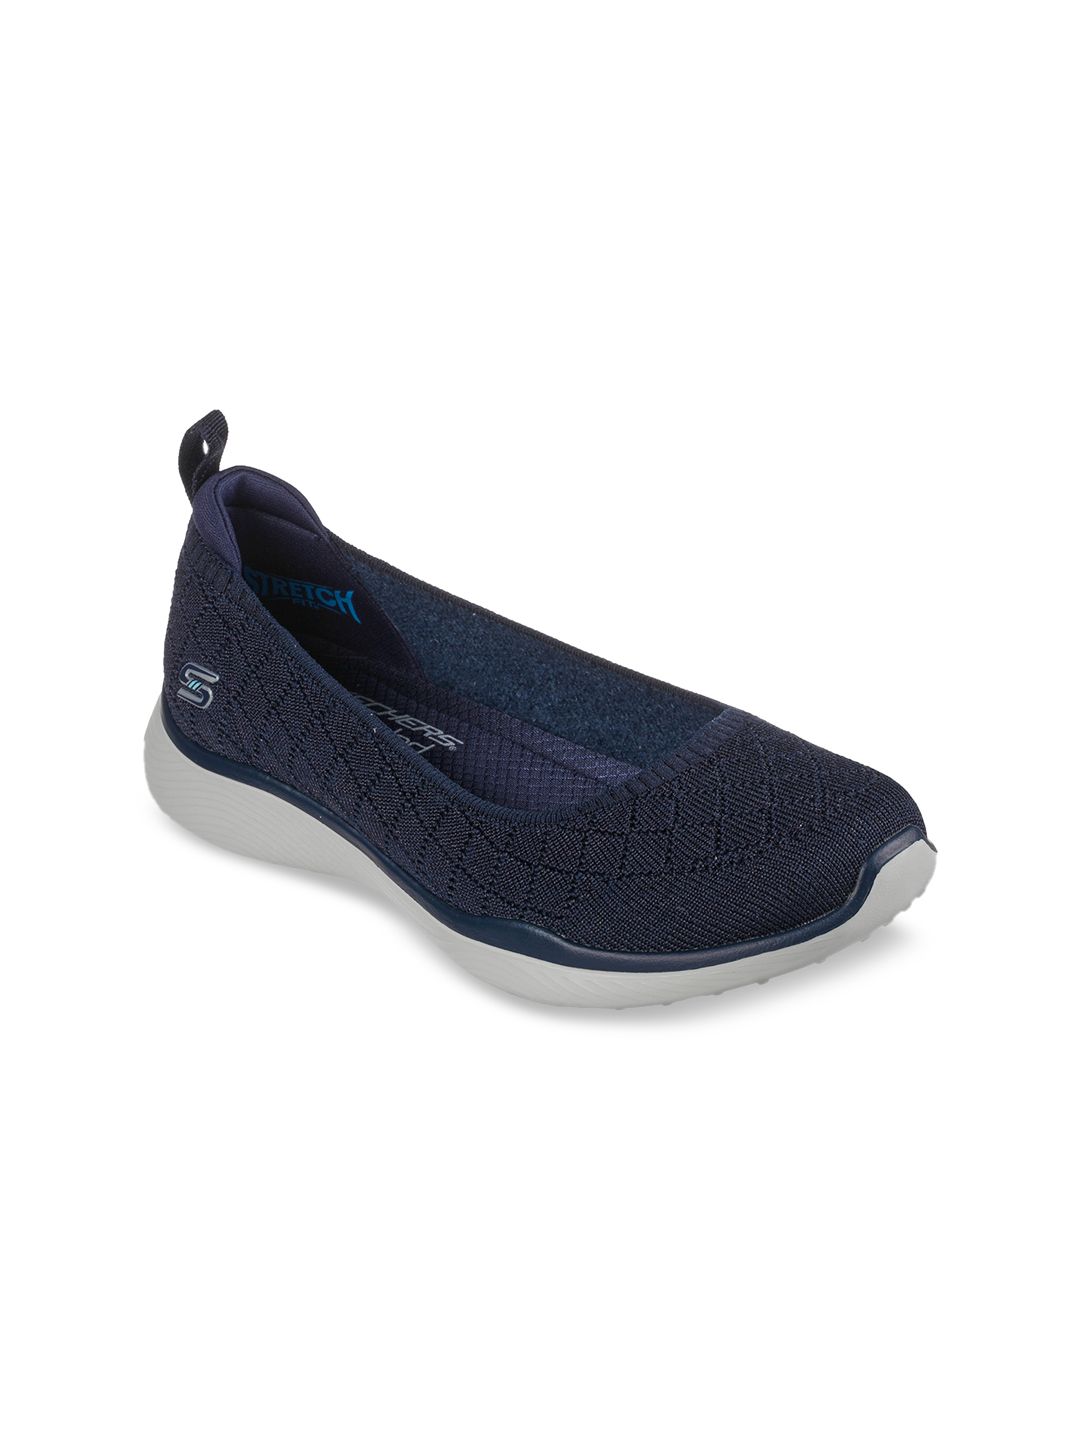 Skechers Women Navy Blue Printed Slip-On Sneakers Price in India